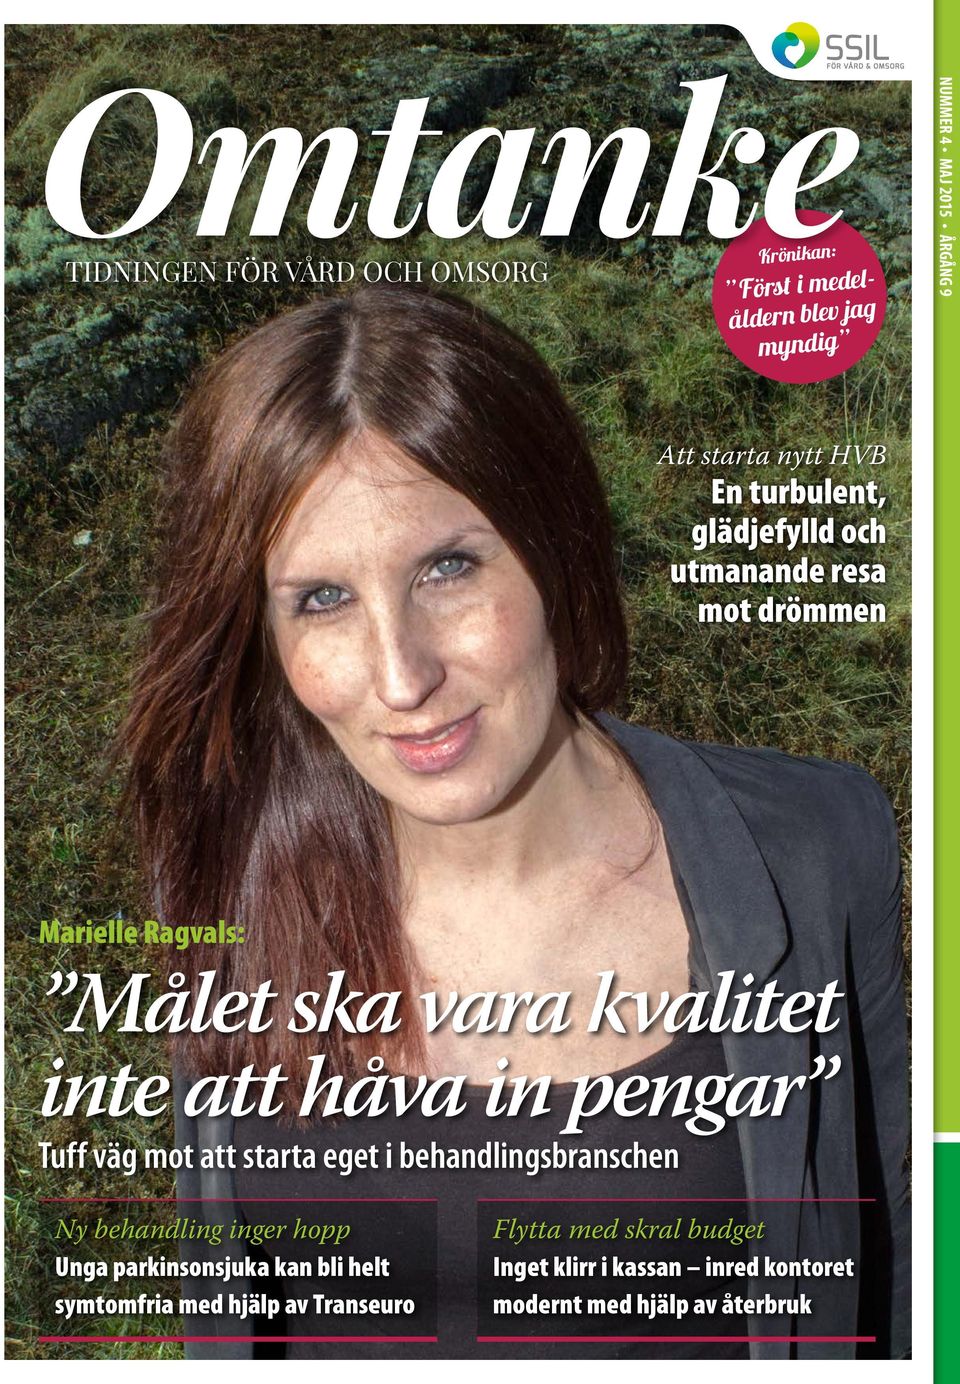 reellt myndig.«marielle Ragvals: Gästkrönikör i det här numret av Omtanke är Vilhelm Ekensteen, ordförande i Intressegruppen för assistansberättigade, IFA.